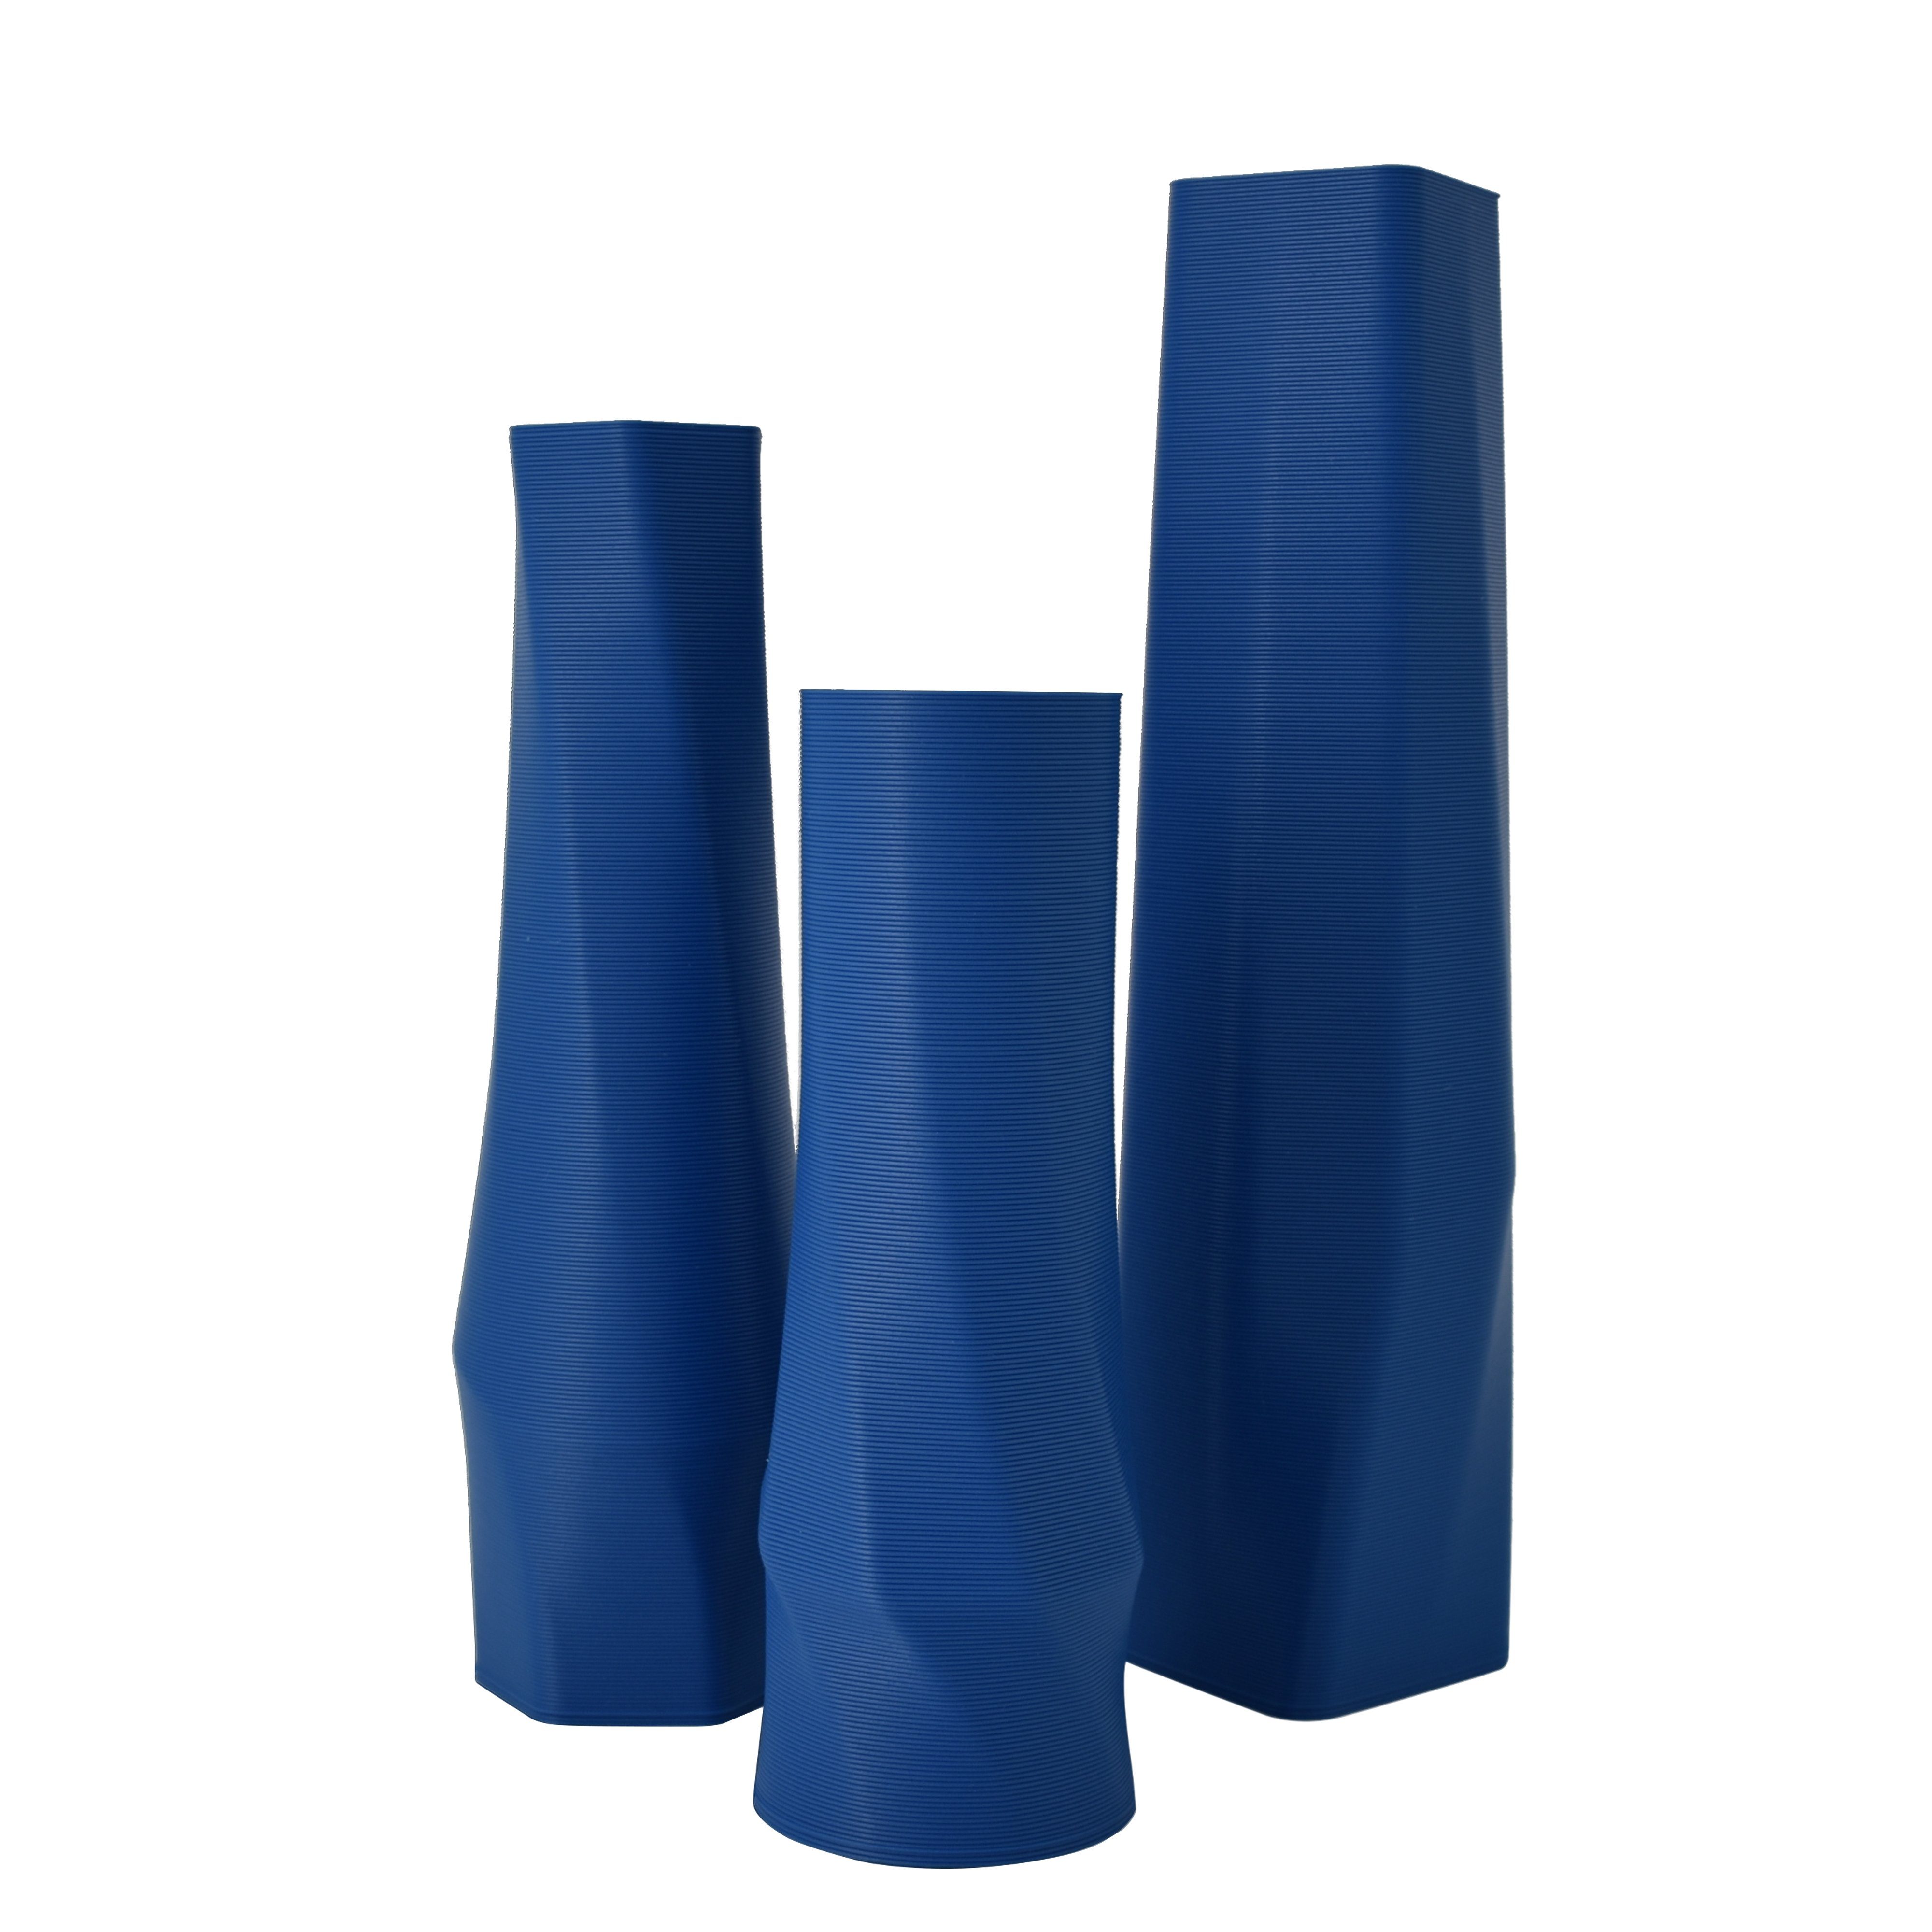 Shapes - Decorations Dekovase geometrio. (basic), 3D Vasen, 3er Set, 3D Dekovase, 100% 3D-Druck (3er Spar-Set, 3 Vasen in verschiedenen Größen), Wasserdicht; Leichte Struktur innerhalb des Materials (Rillung) Blau